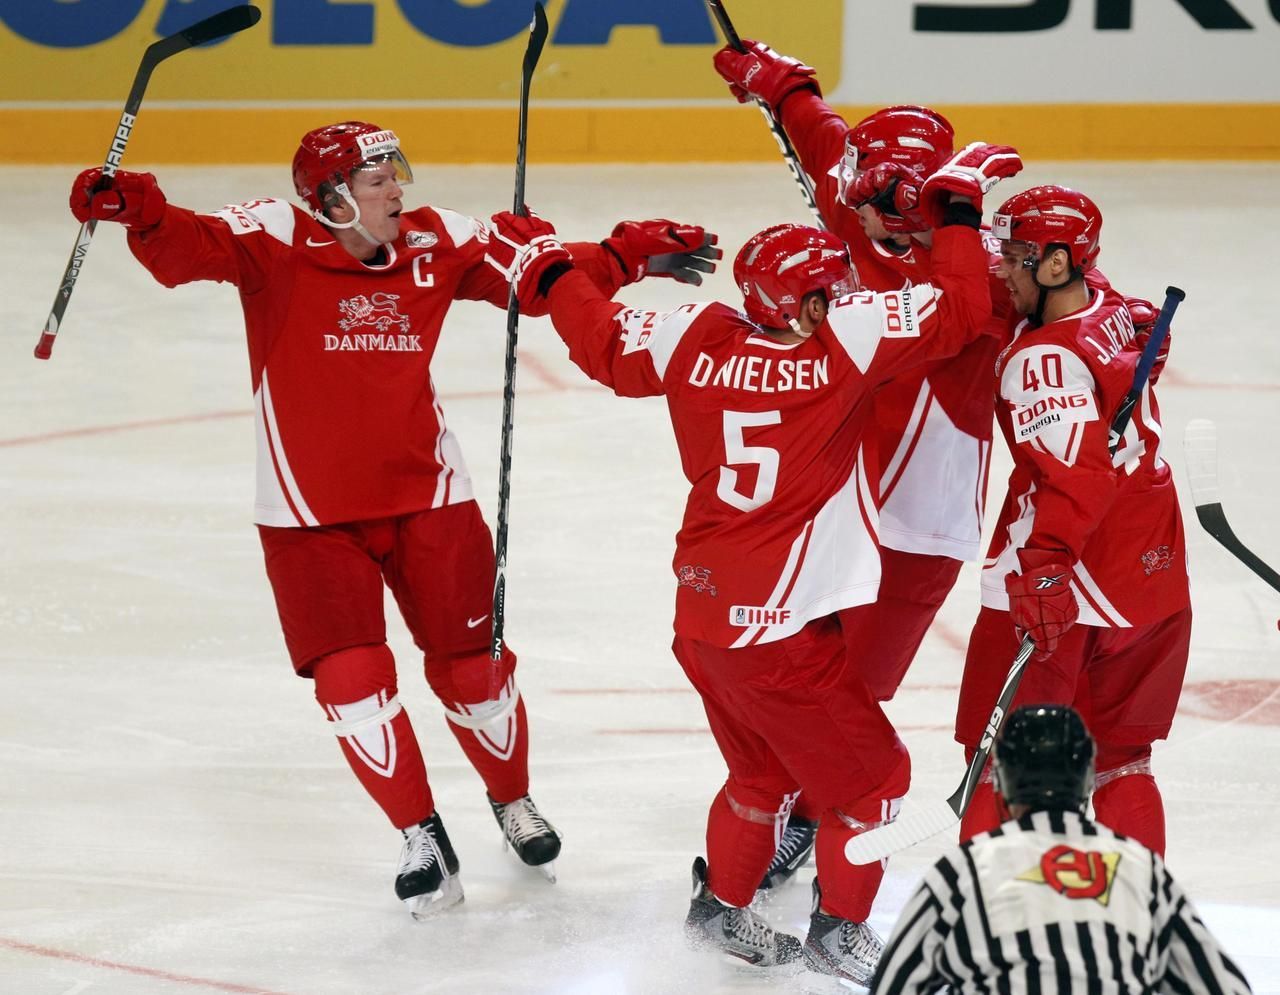 MS v hokeji 2012: Itálie - Dánsko (radost Dánska)